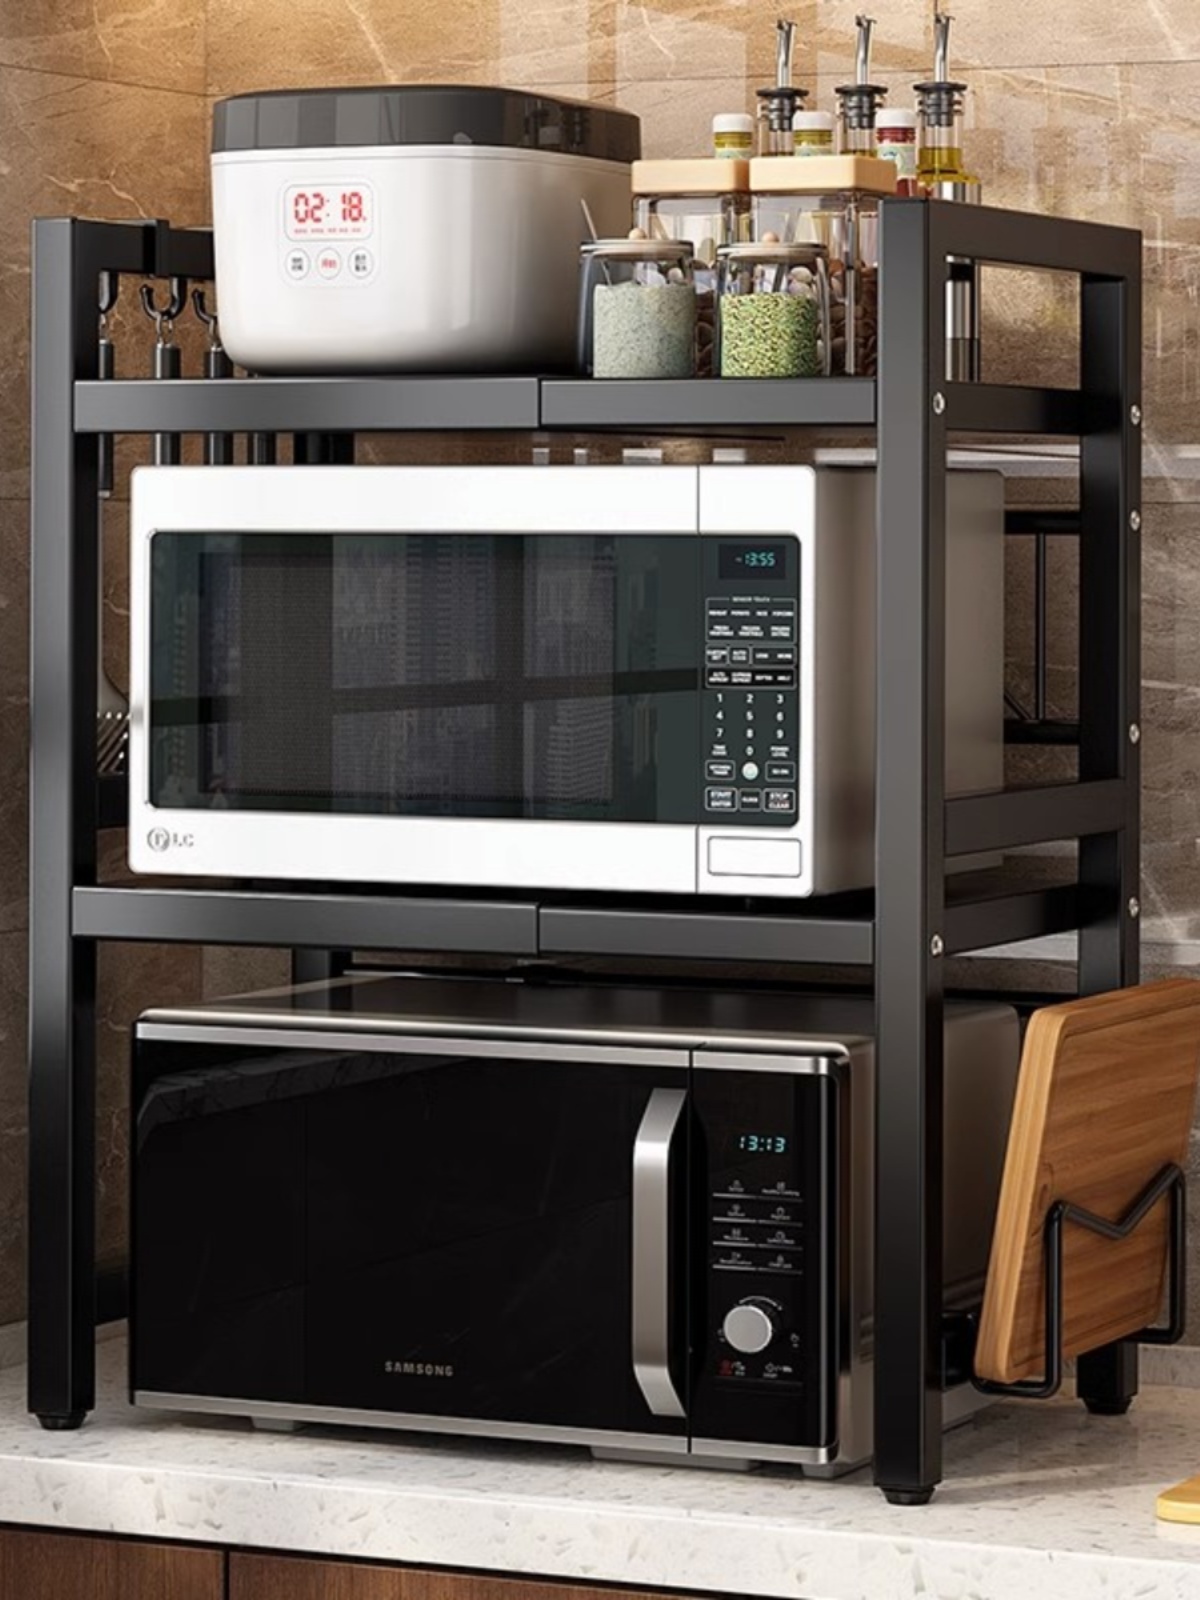 節省空間微波爐置物架廚房雙層伸縮收納架整齊收納鍋具筷子刀具